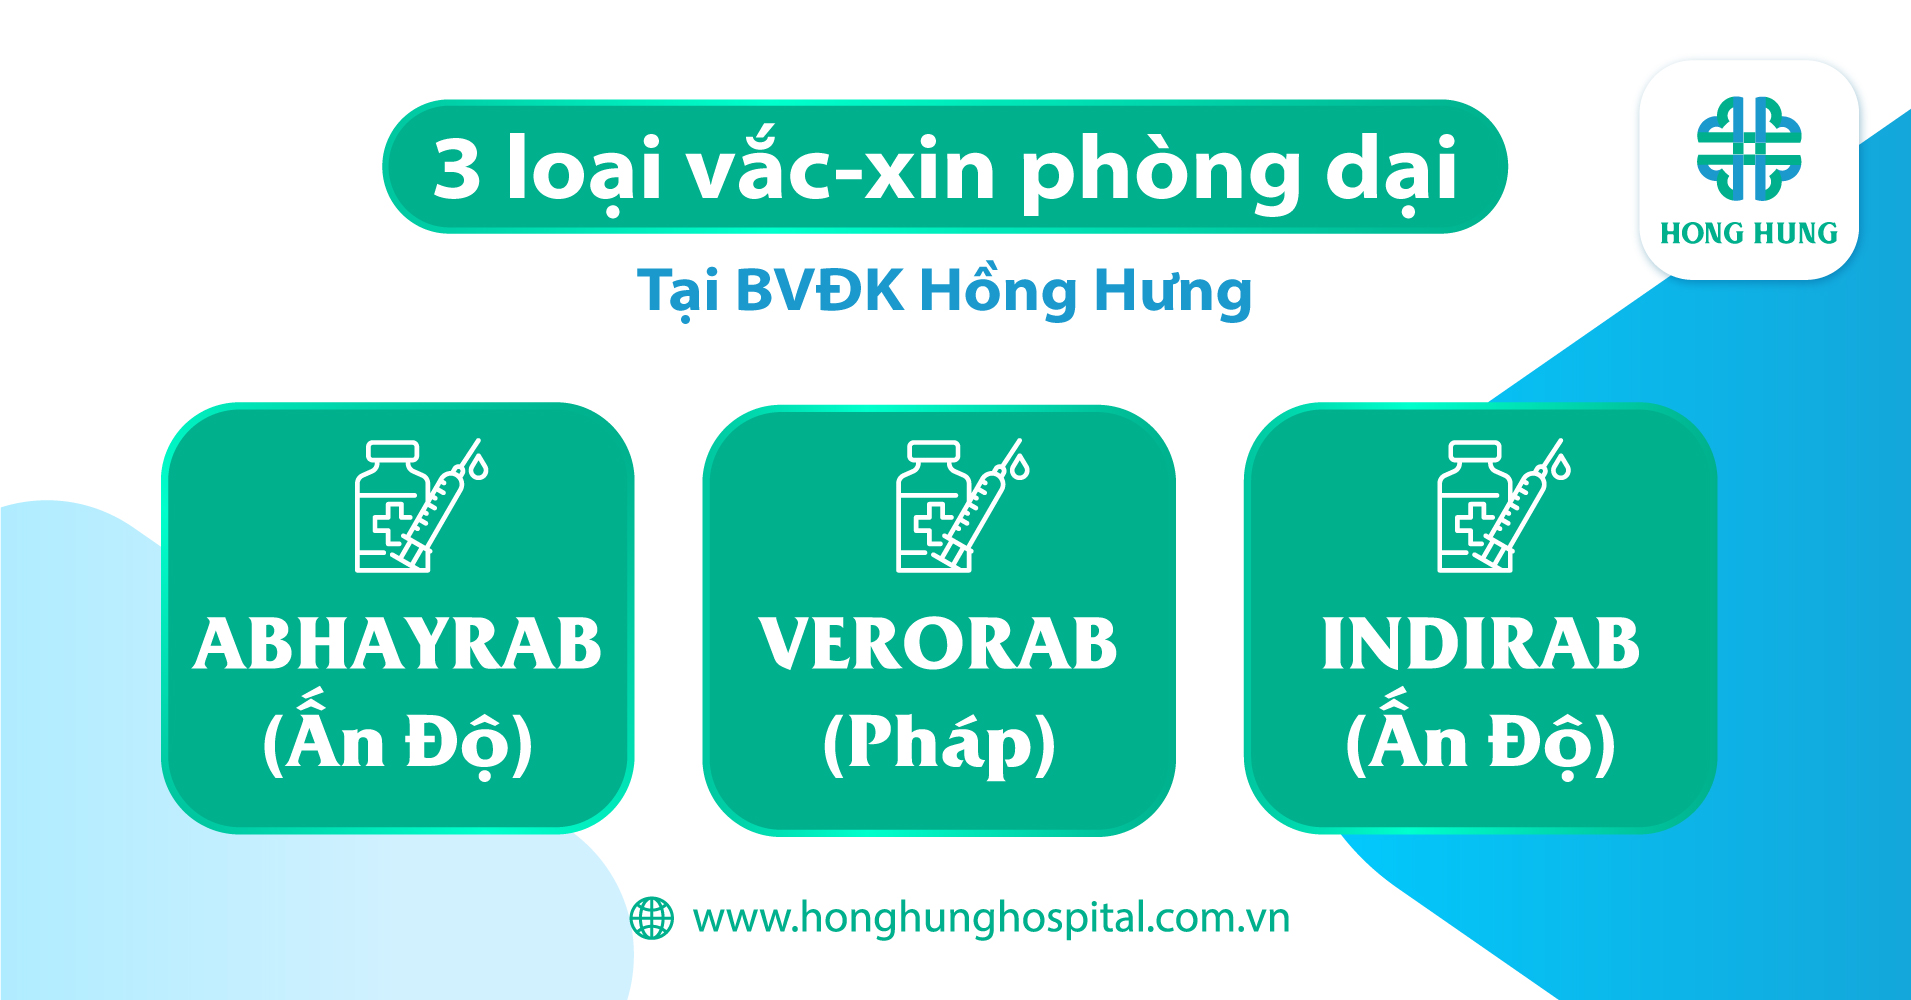 3 loại vắc-xin chích ngừa dại tại BVĐK Hồng Hưng